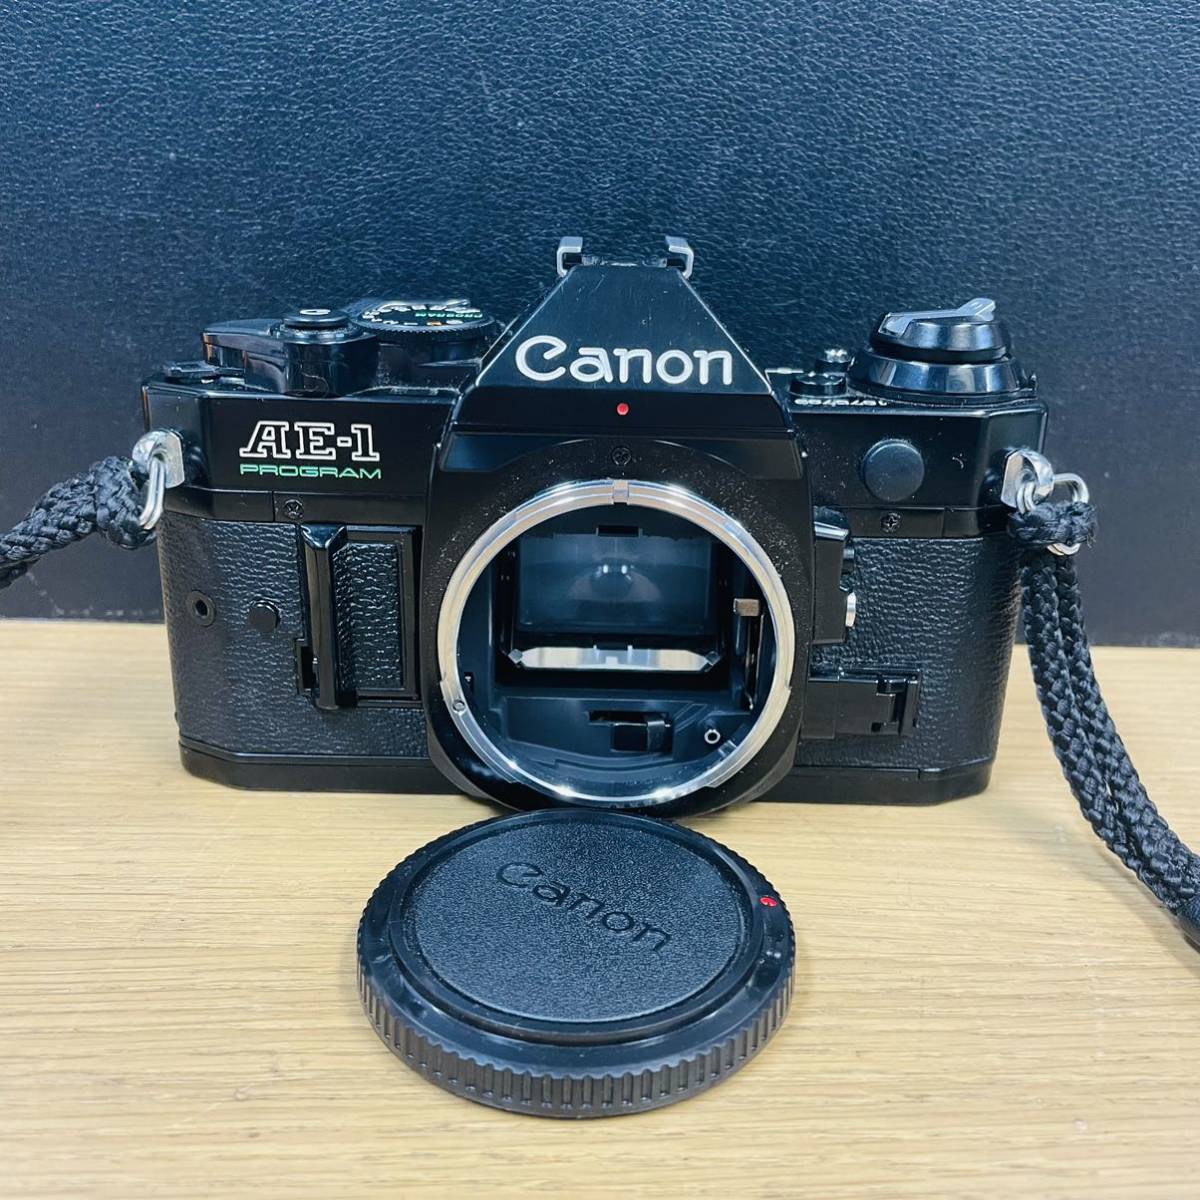 概ね美品 Canon AE-1 Program フィルムカメラ ボディ ブラック NN5867